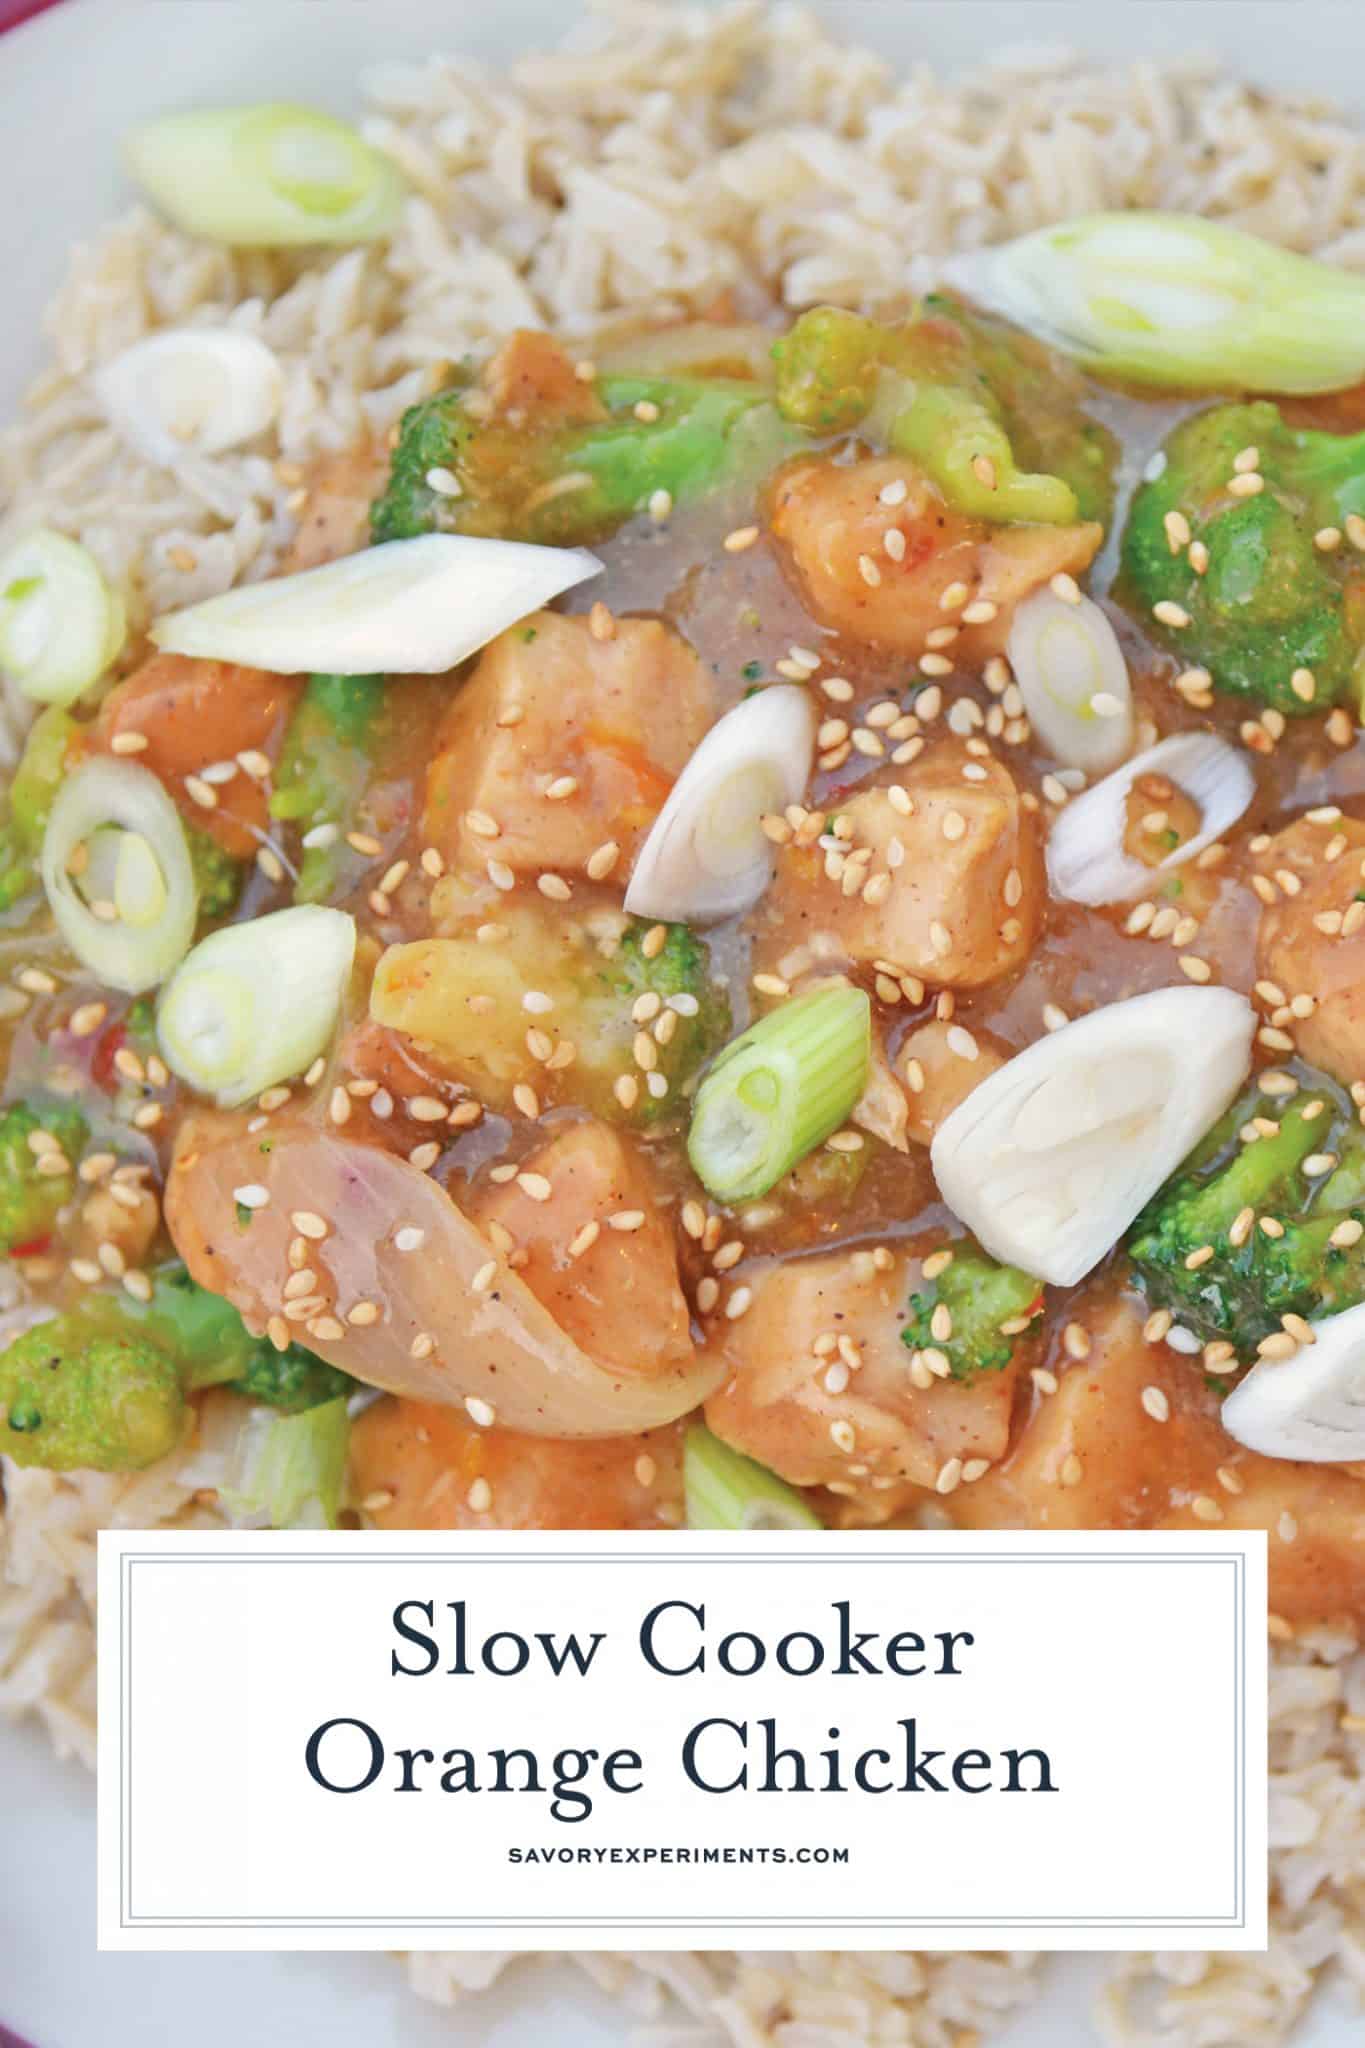 Slow Cooker Orange Chicken - An Easy Orange Chicken Recipe